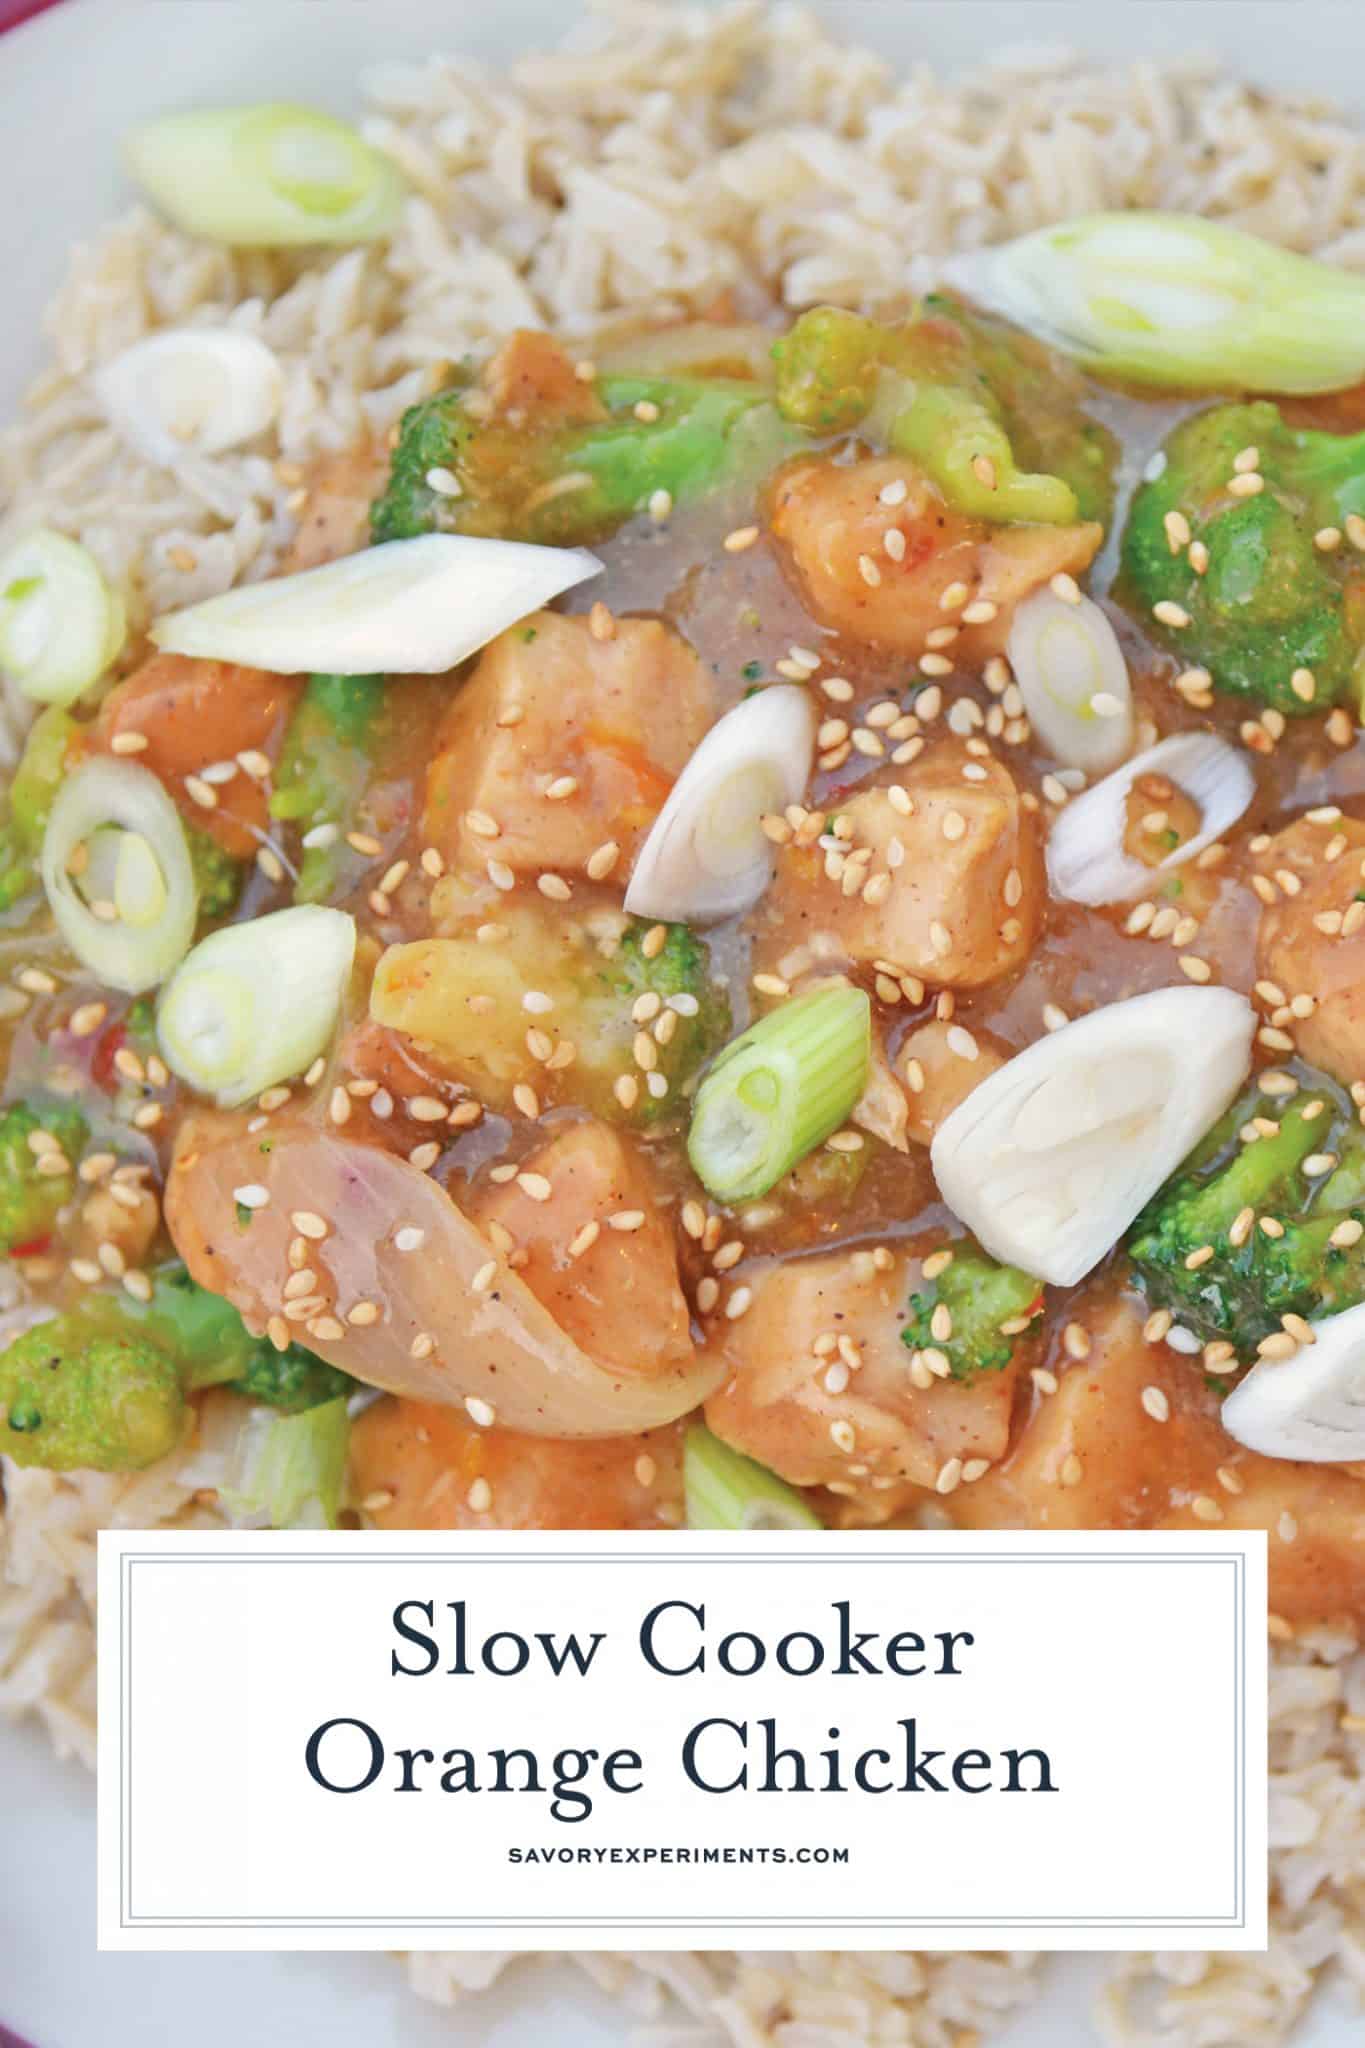 Slow Cooker Orange Chicken - An Easy Orange Chicken Recipe